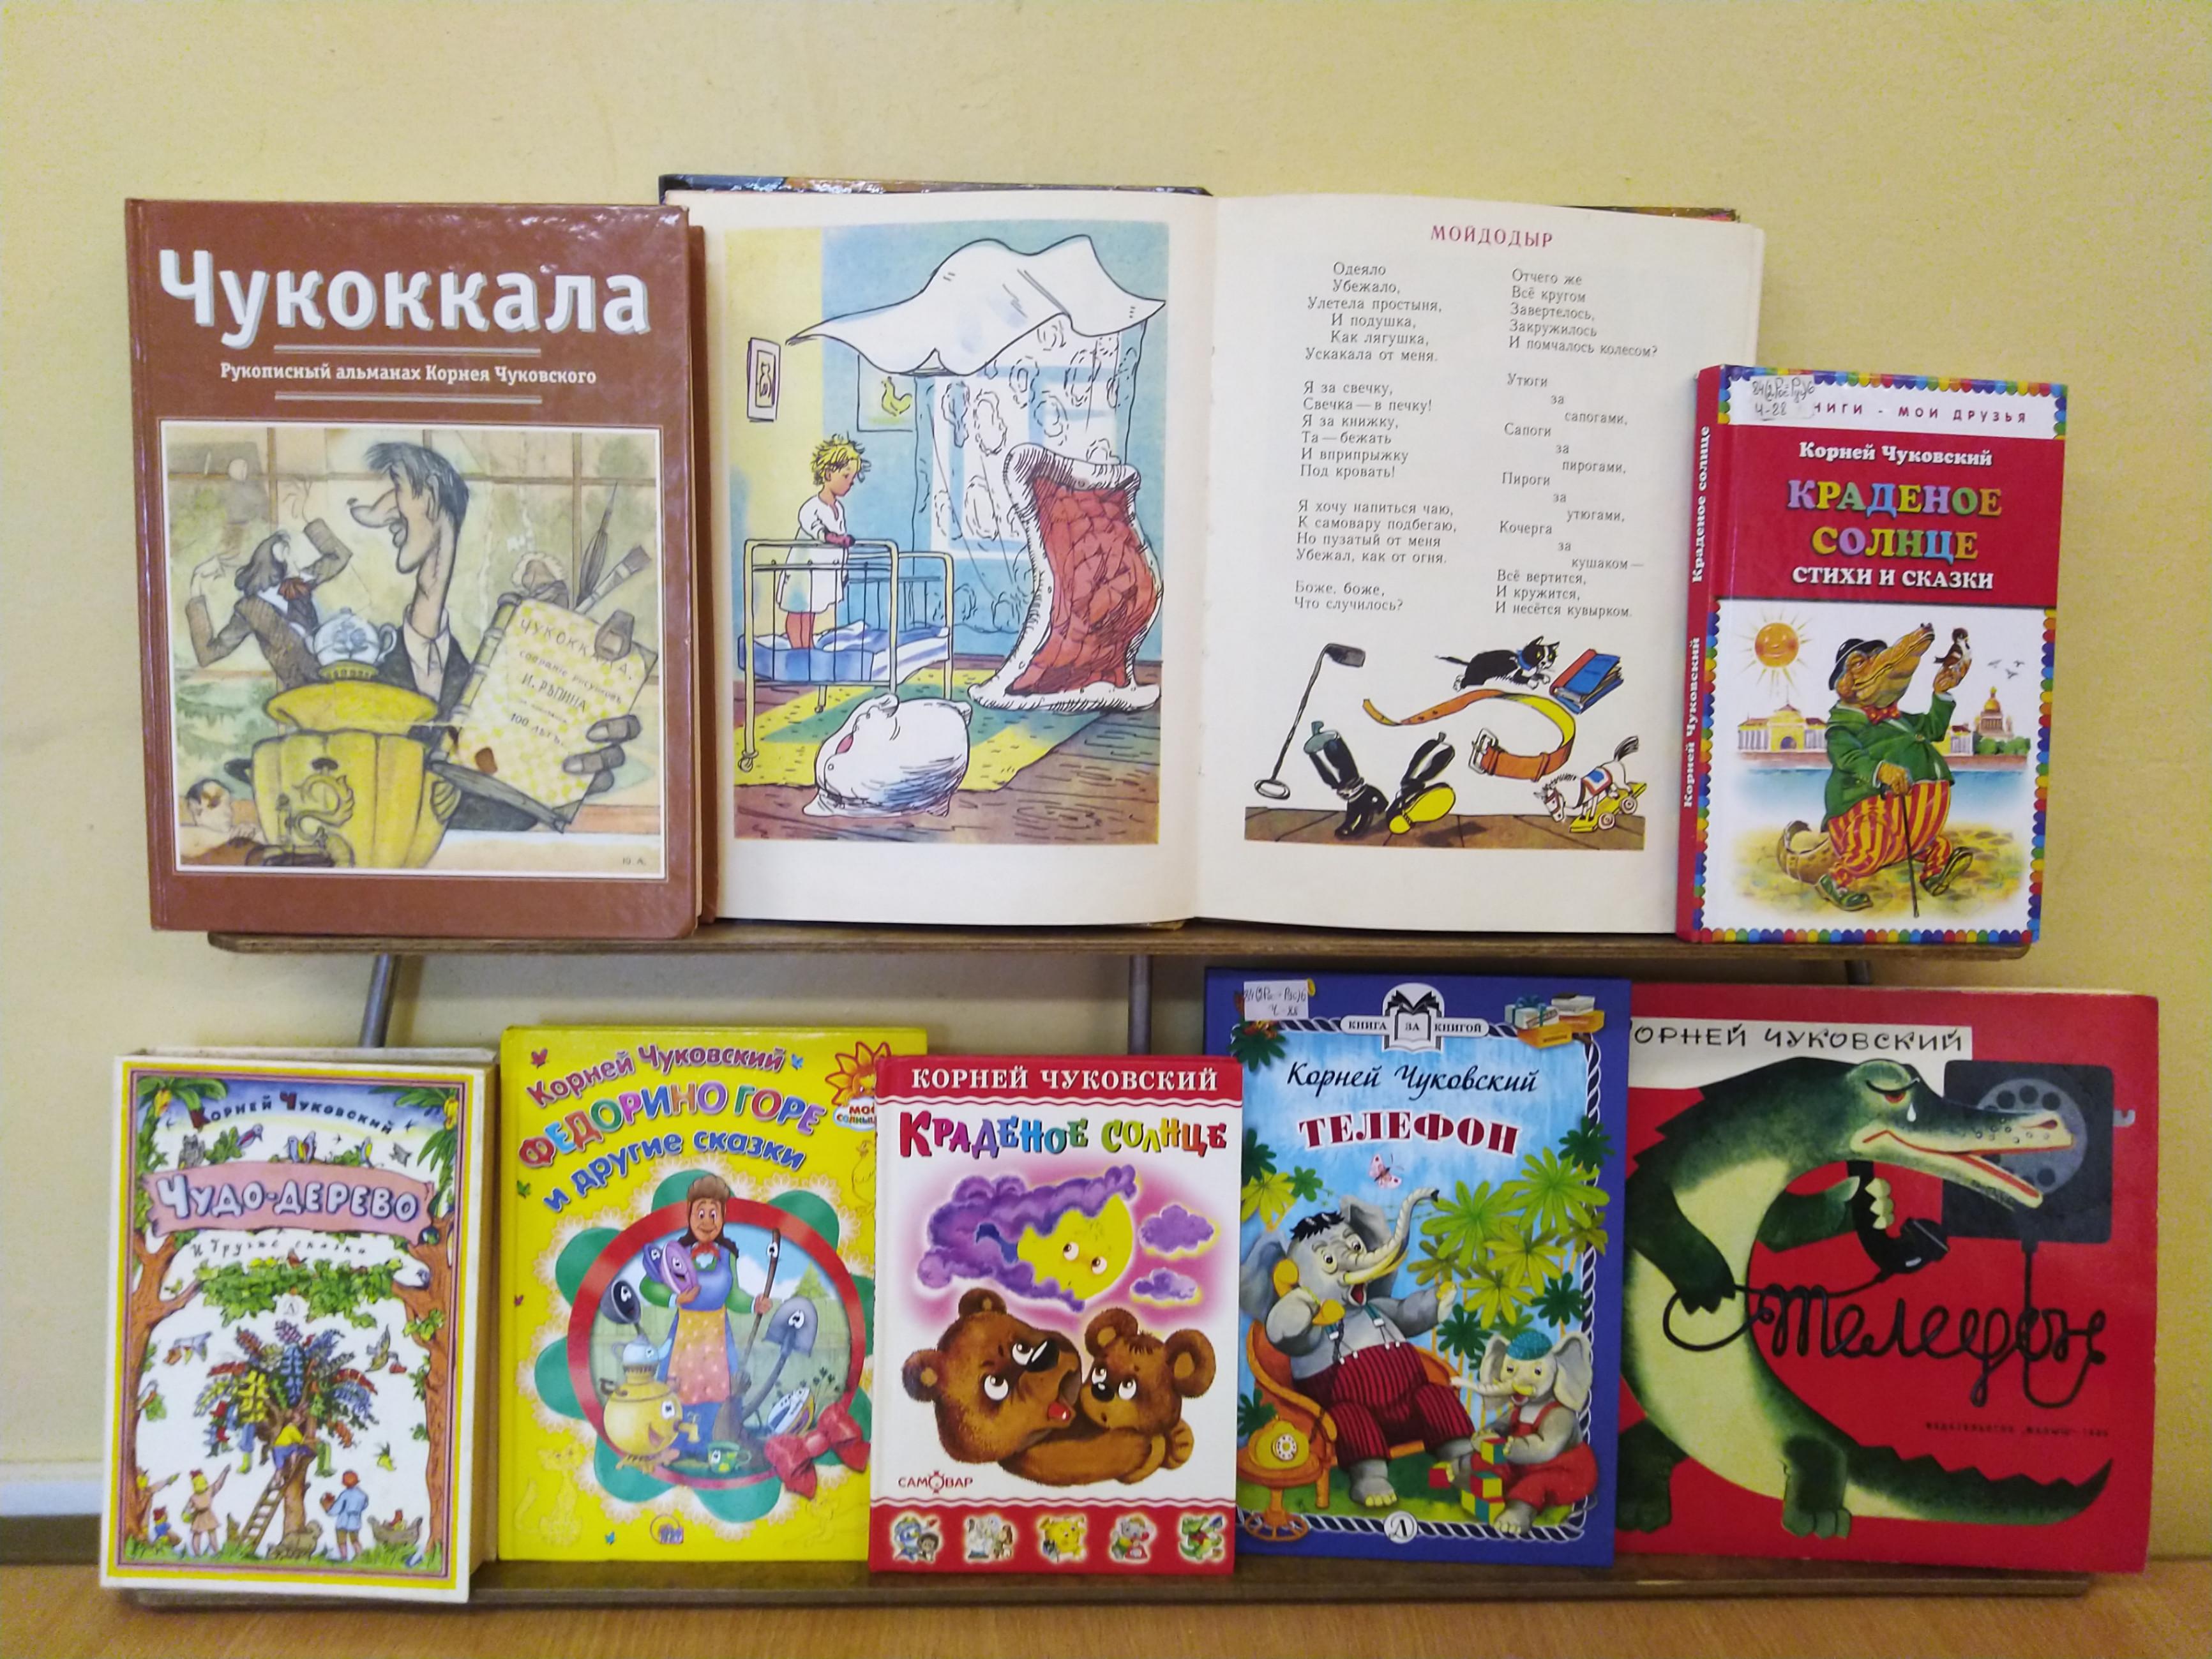 Какие книги чуковского. Книги Чуковского. Книги Чуковского для детей.